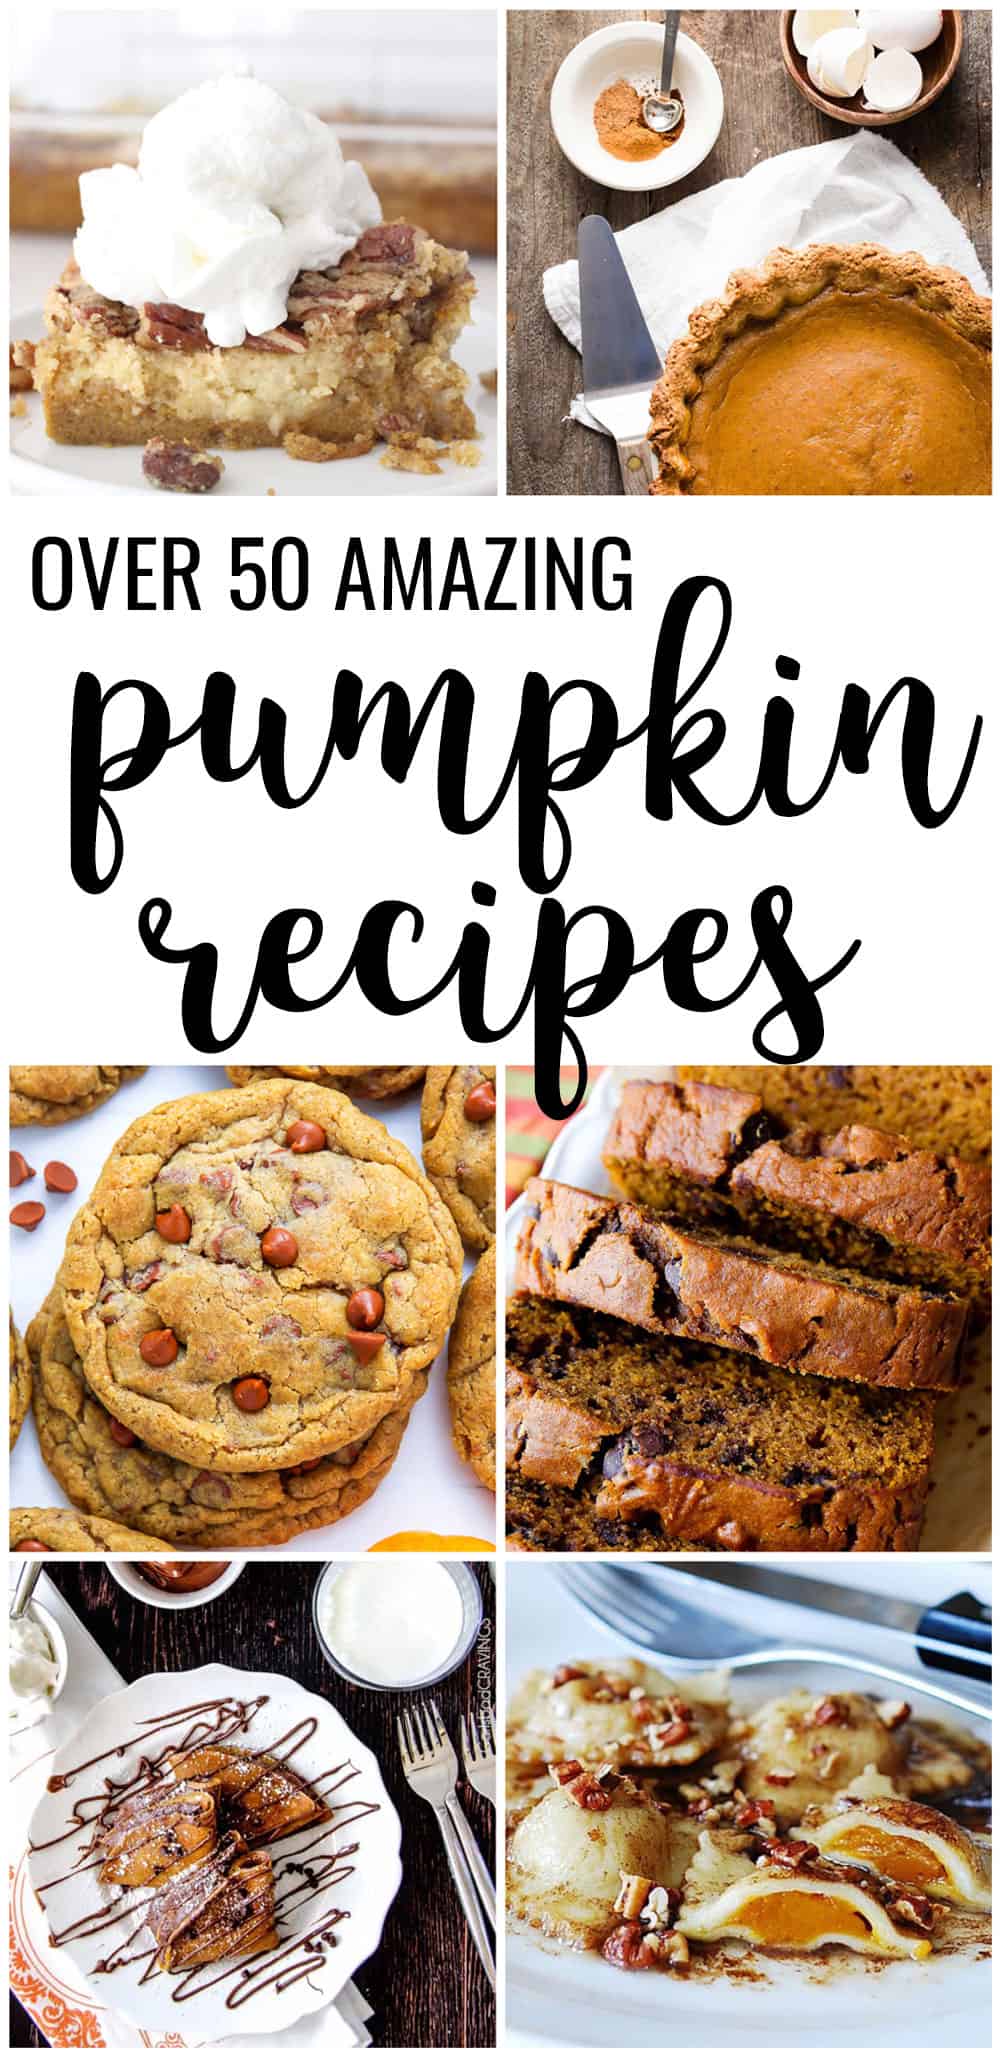 pumpkin-recipes-amazing